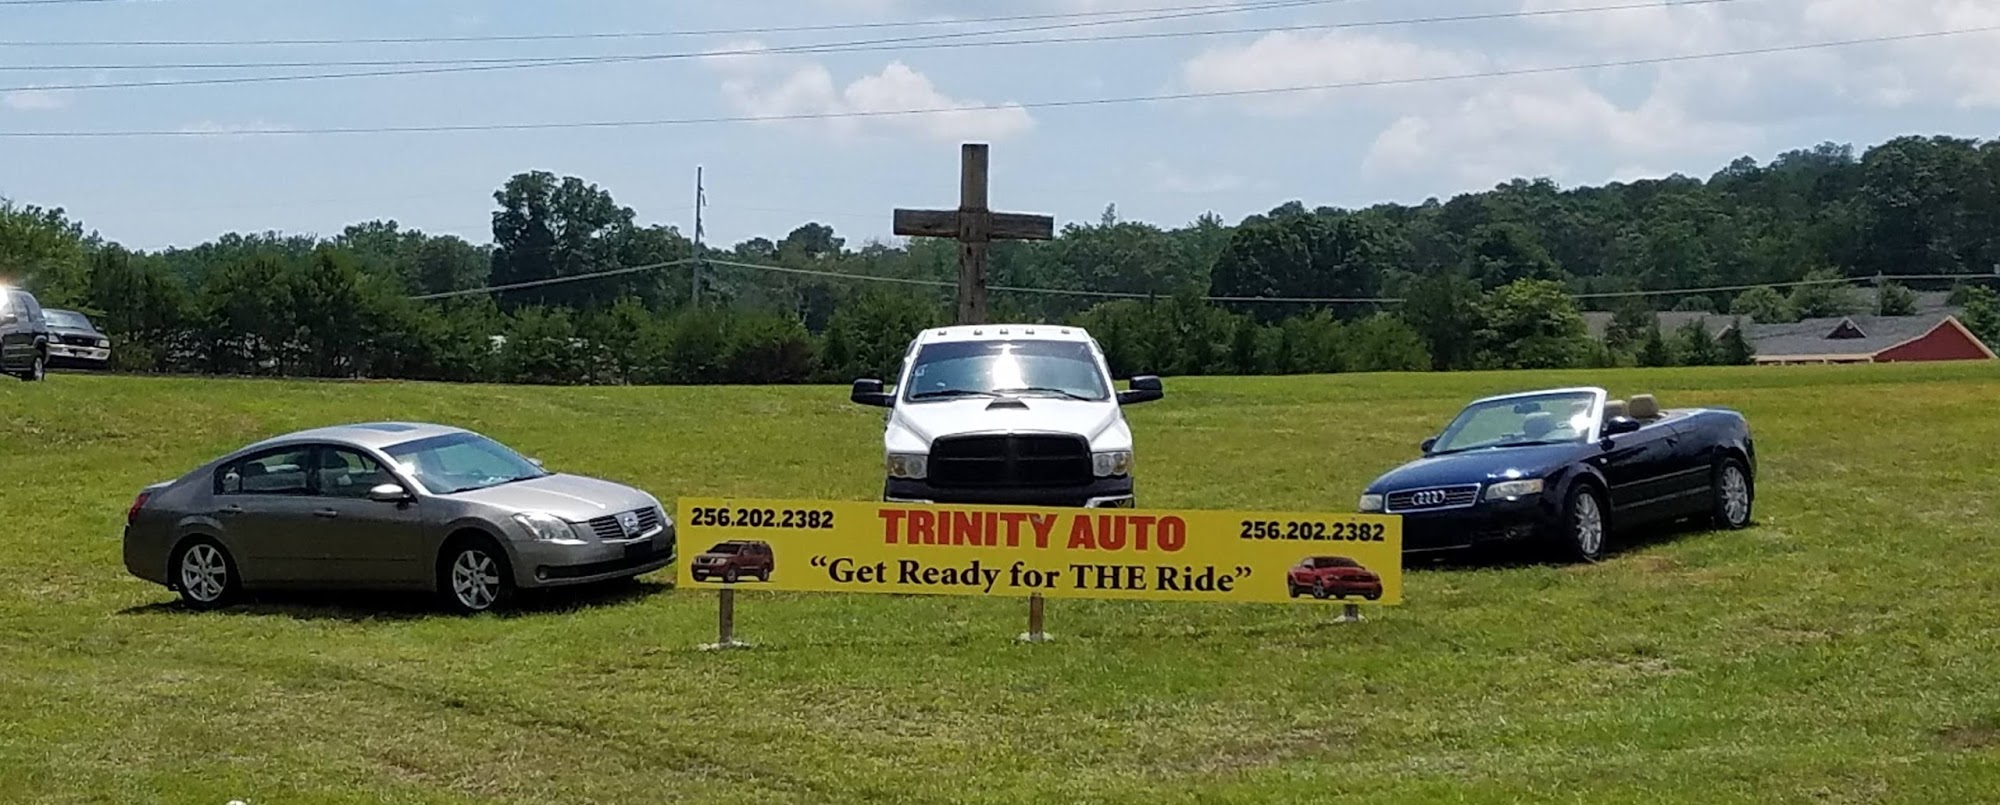 Trinity Auto